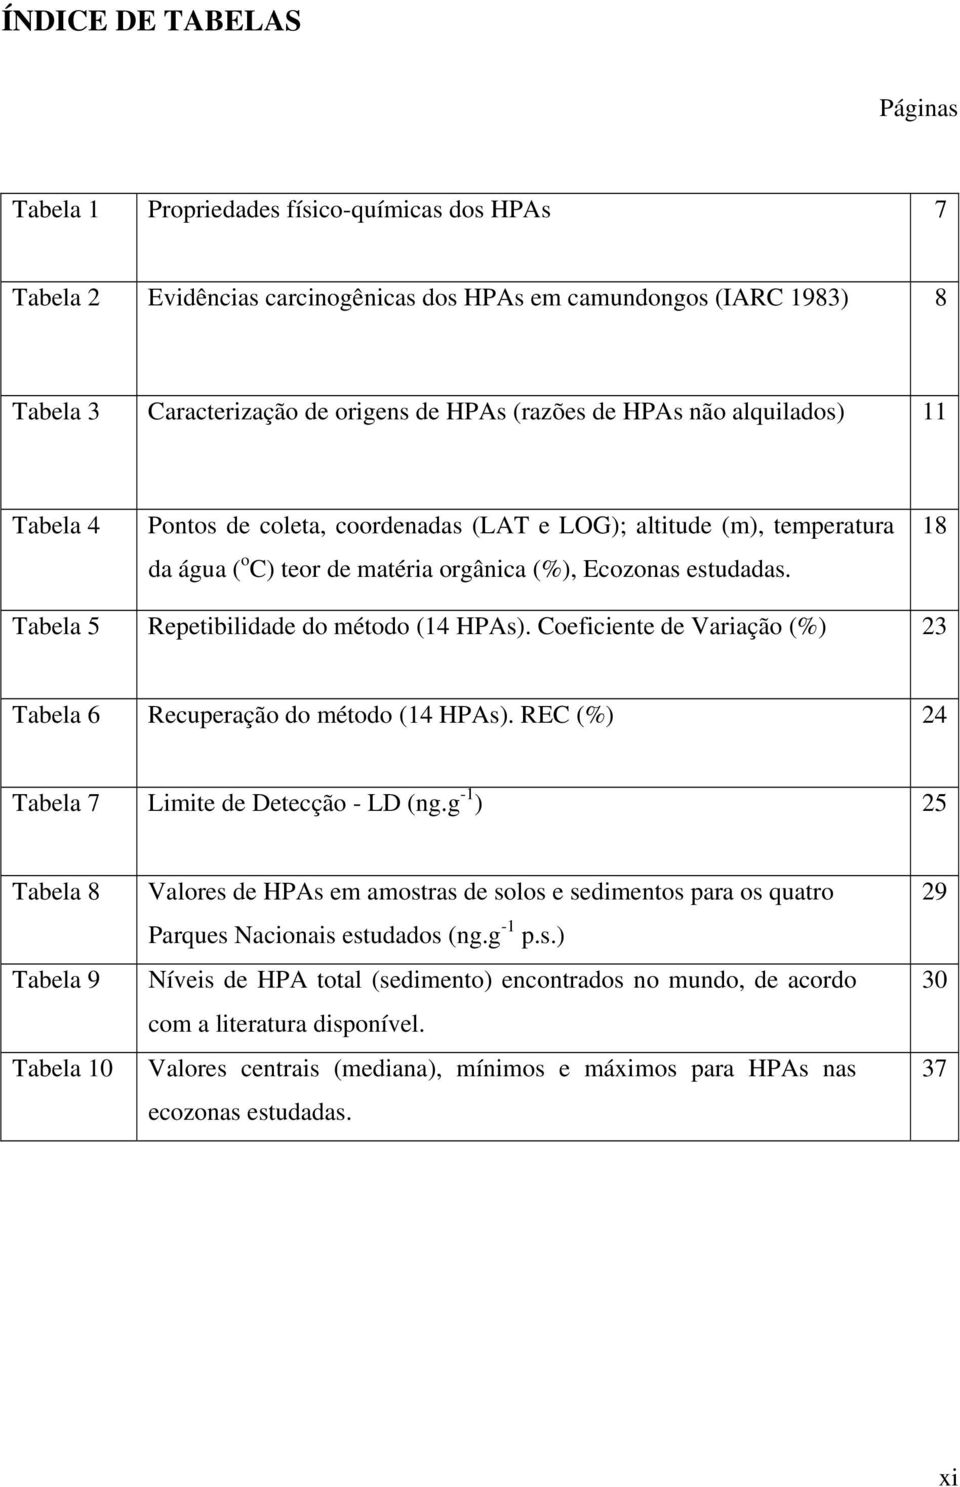 18 Tabela 5 Repetibilidade do método (14 HPAs). Coeficiente de Variação (%) 23 Tabela 6 Recuperação do método (14 HPAs). REC (%) 24 Tabela 7 Limite de Detecção - LD (ng.